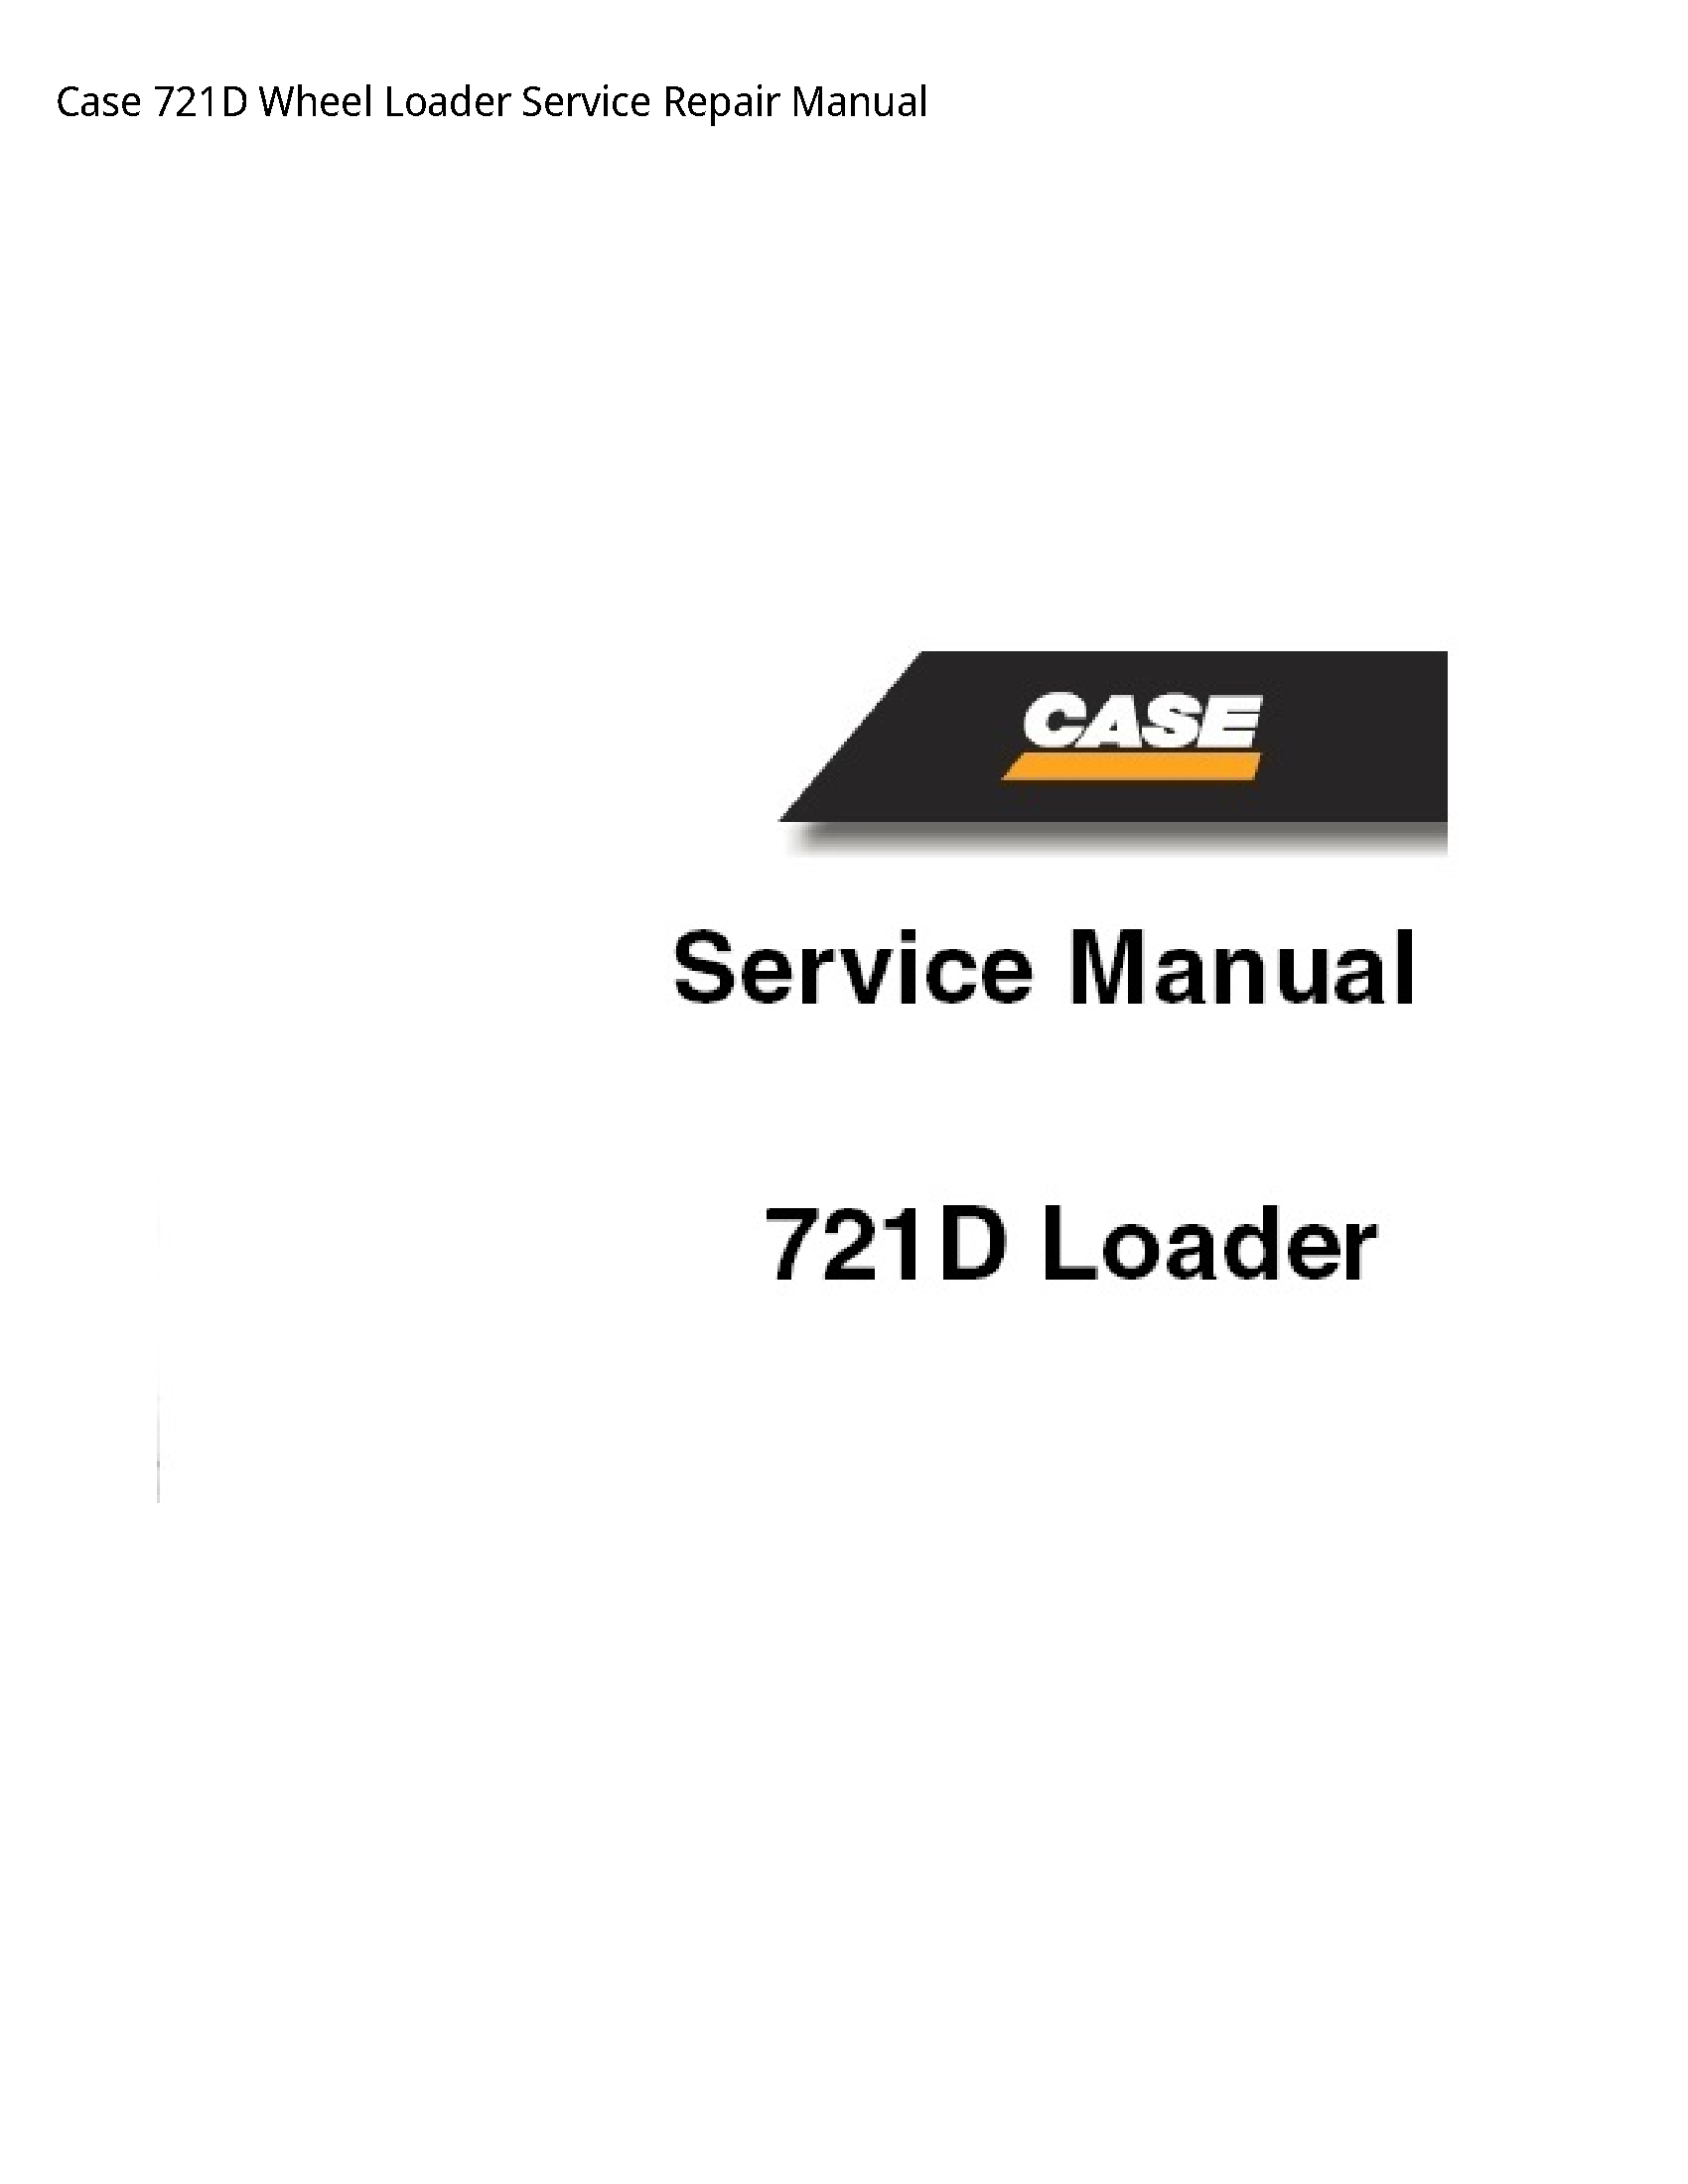 Case/Case IH 721D Wheel Loader manual